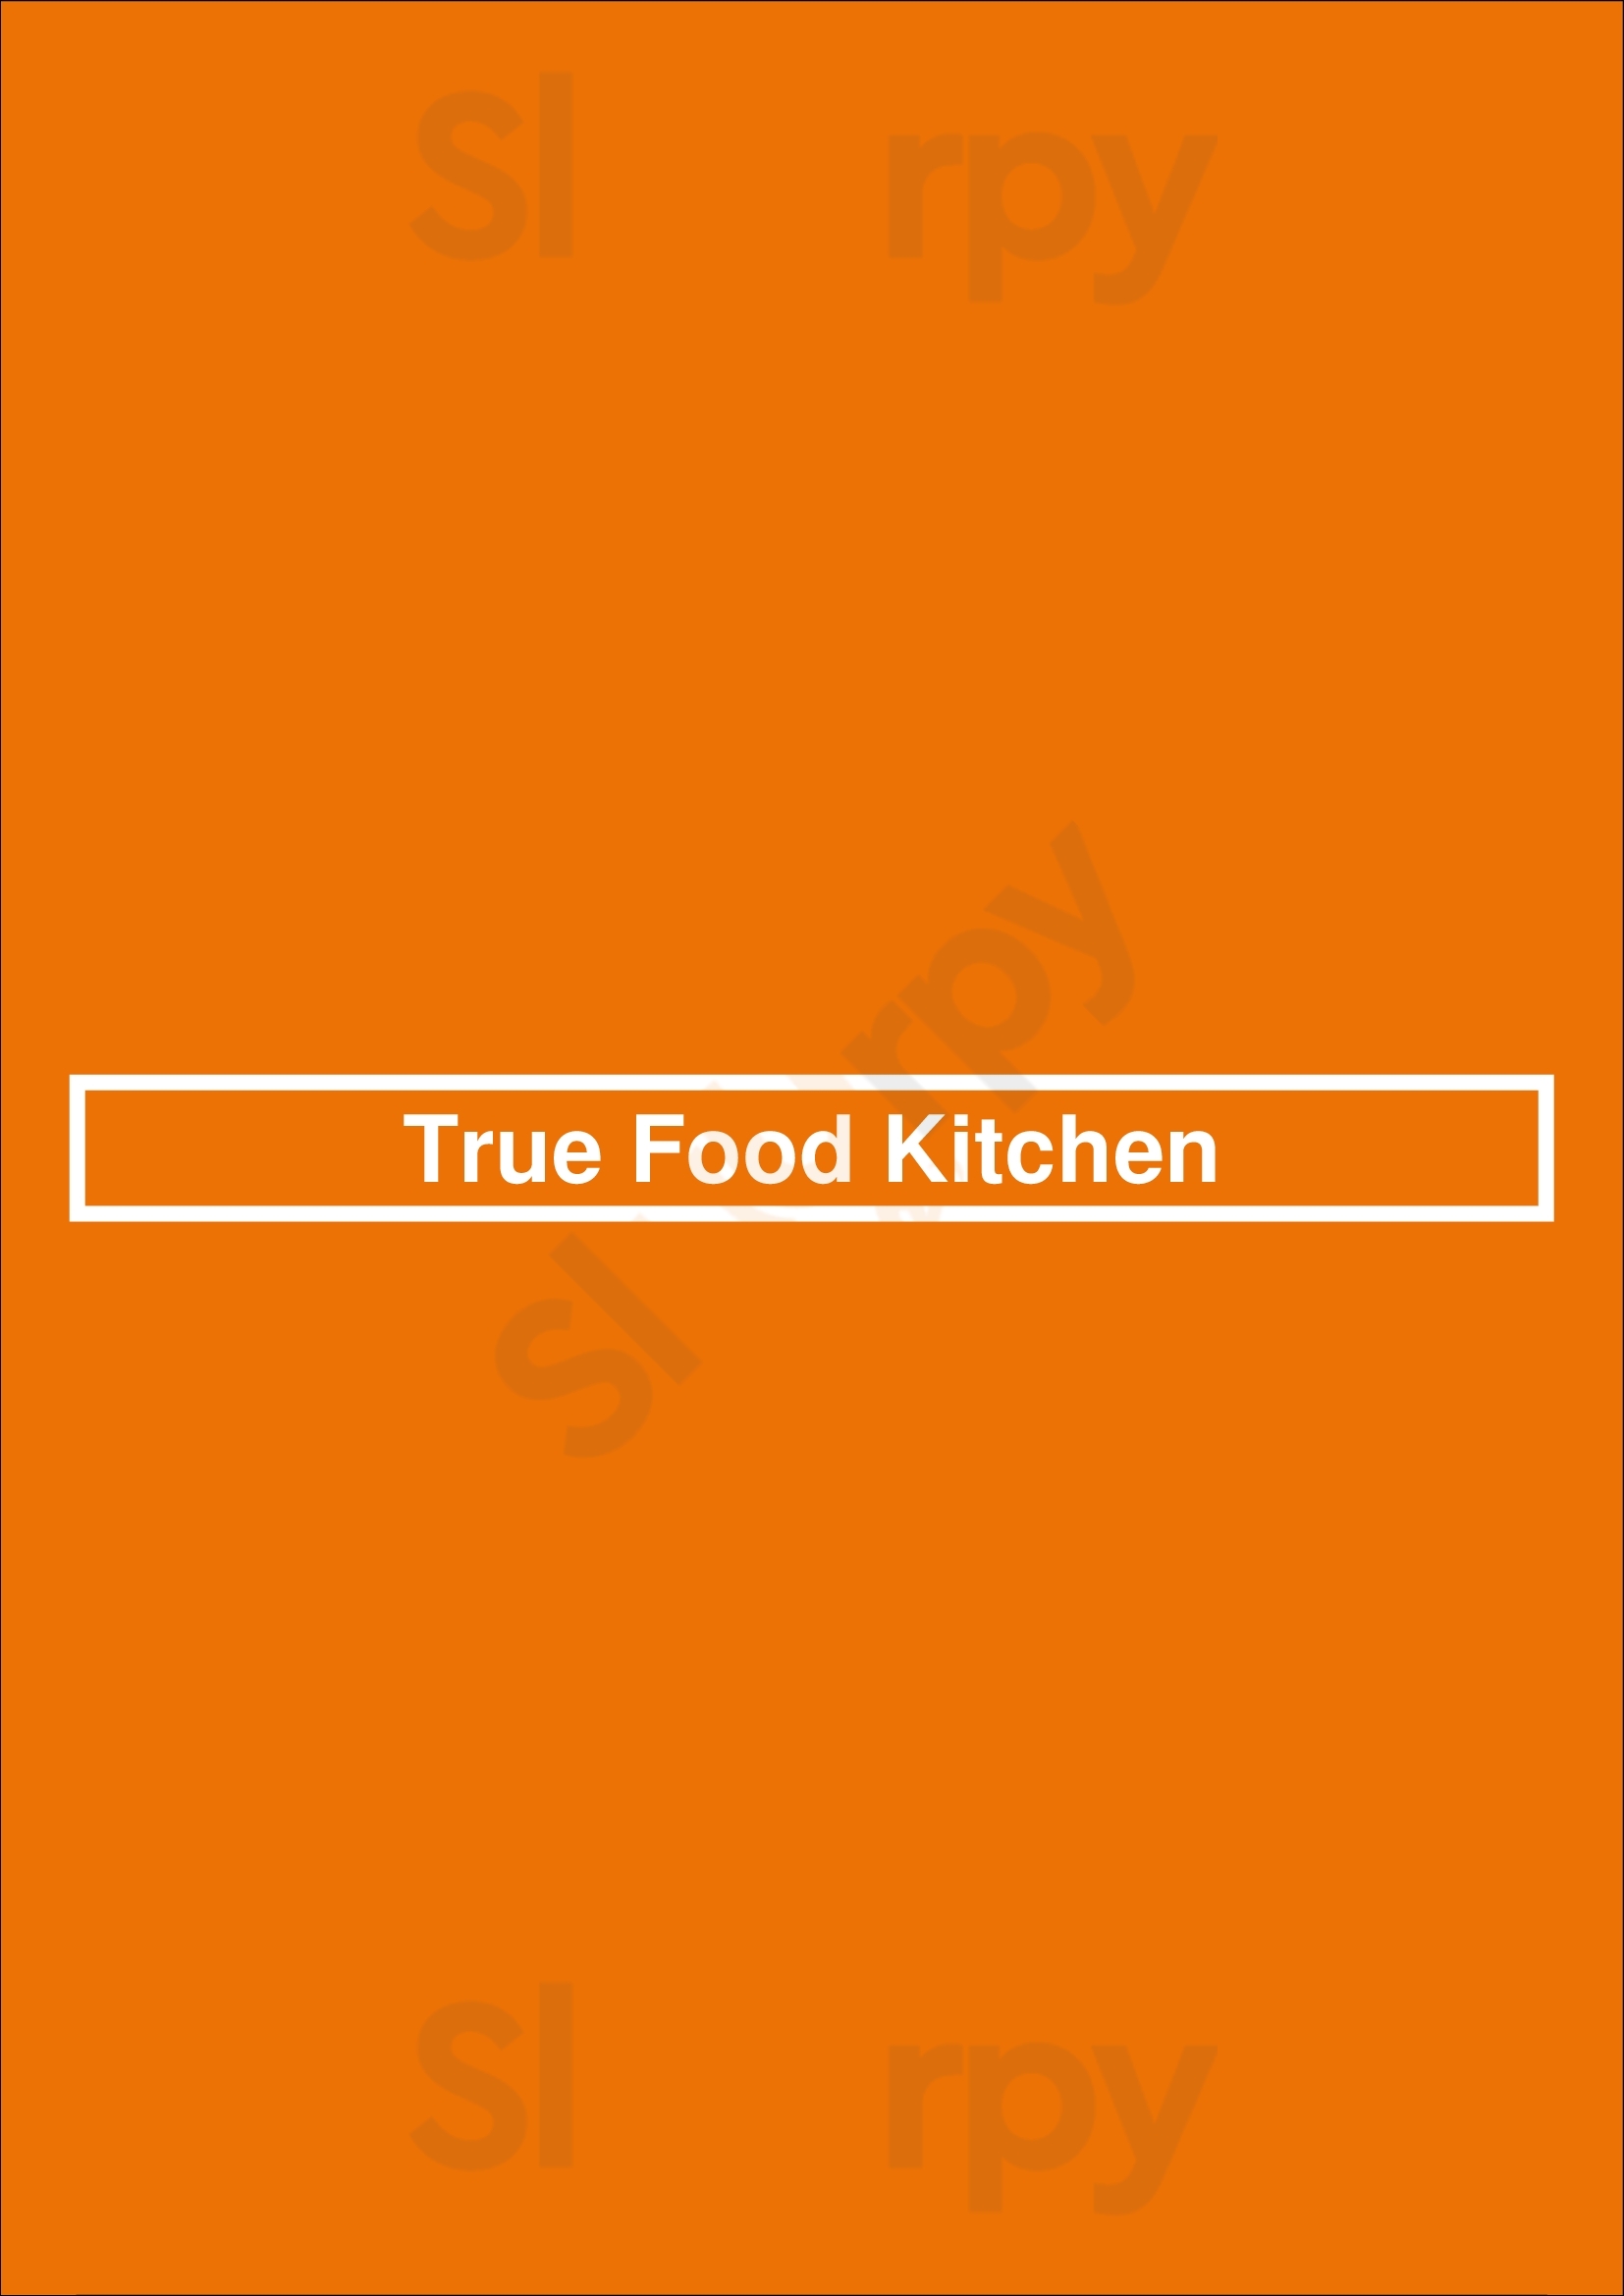 True Food Kitchen Denver Menu - 1